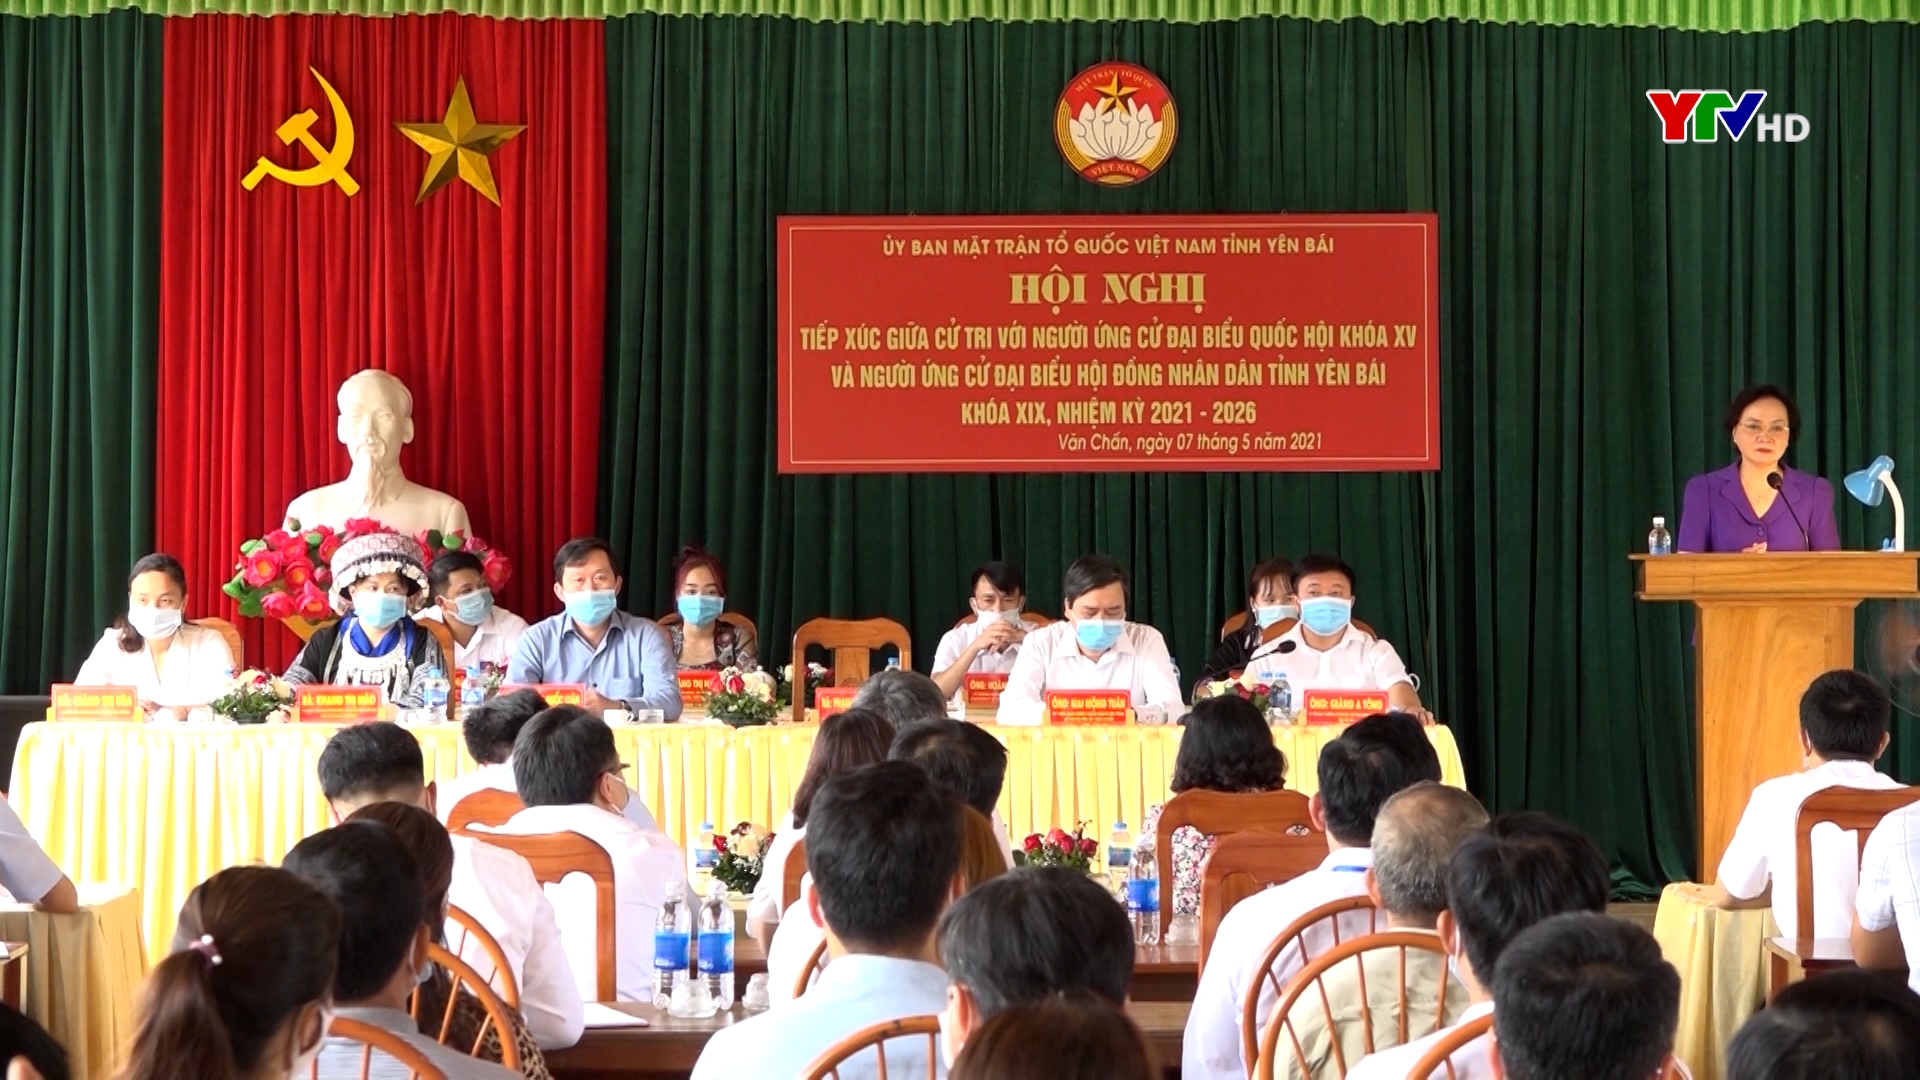 Hội nghị tiếp xúc cử tri, vận động bầu cử tại xã Nghĩa Tâm, huyện Văn Chấn